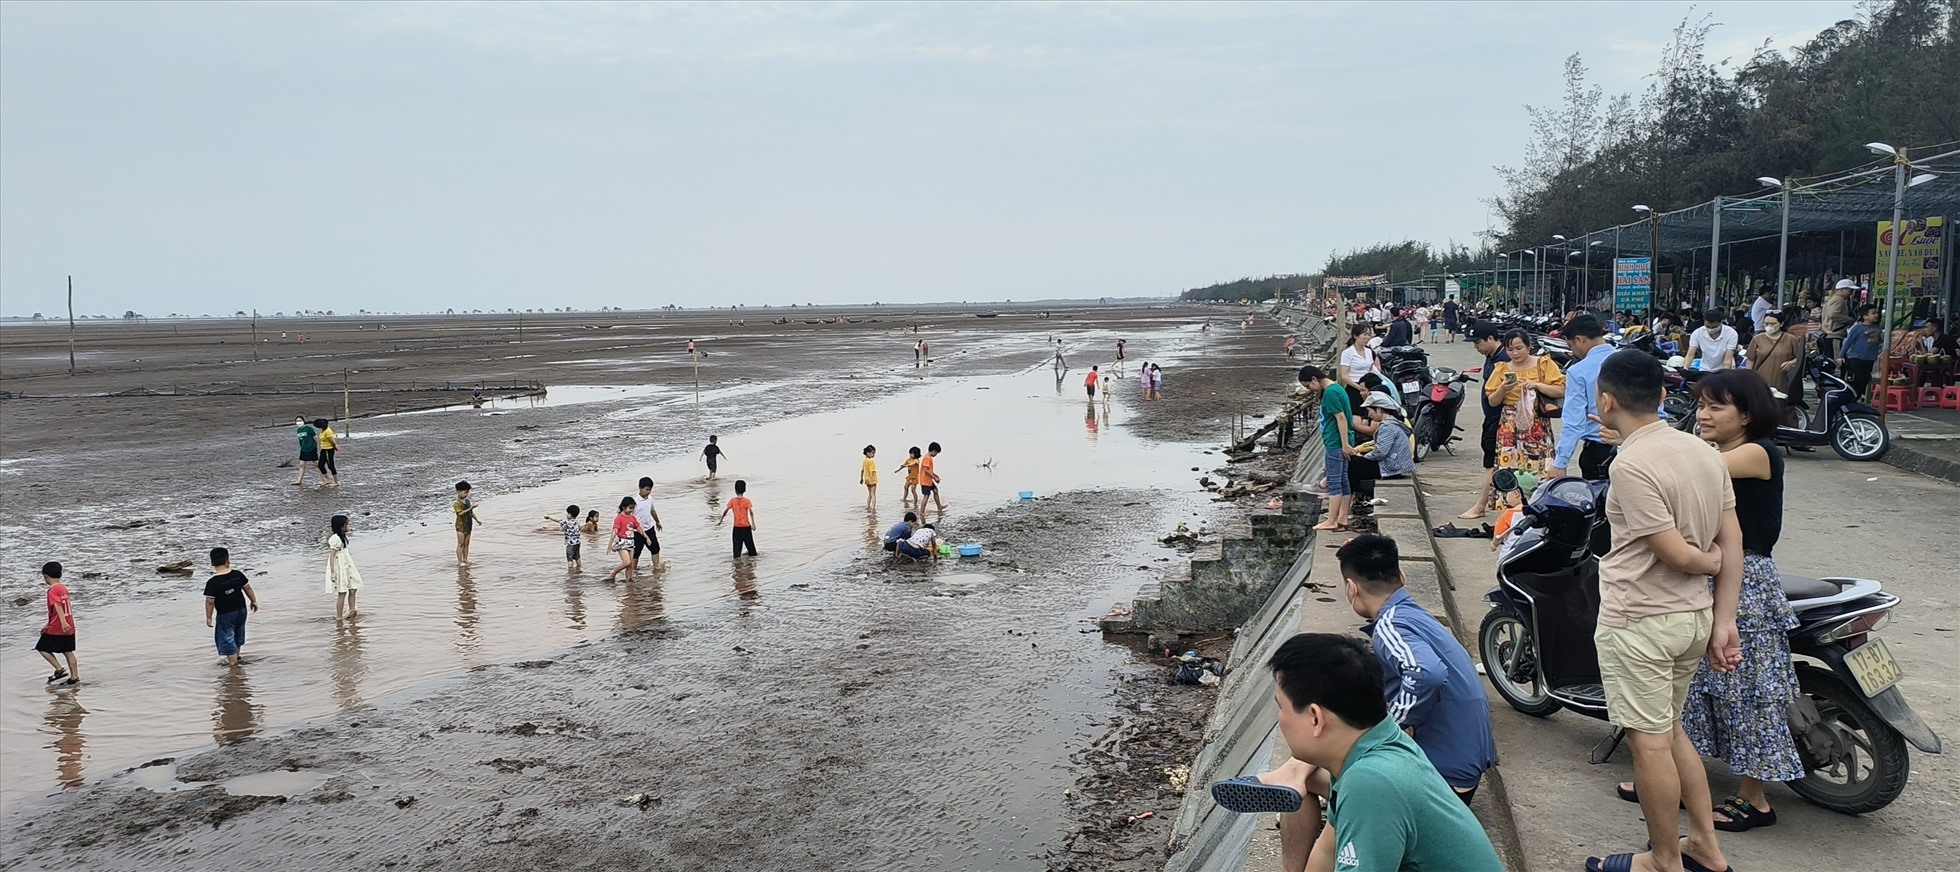 Cùng với bãi biển Cồn Vành, bãi biển Đồng Châu cũng rất hút khách dịp nghỉ lễ năm nay. Ảnh: Bá Dương